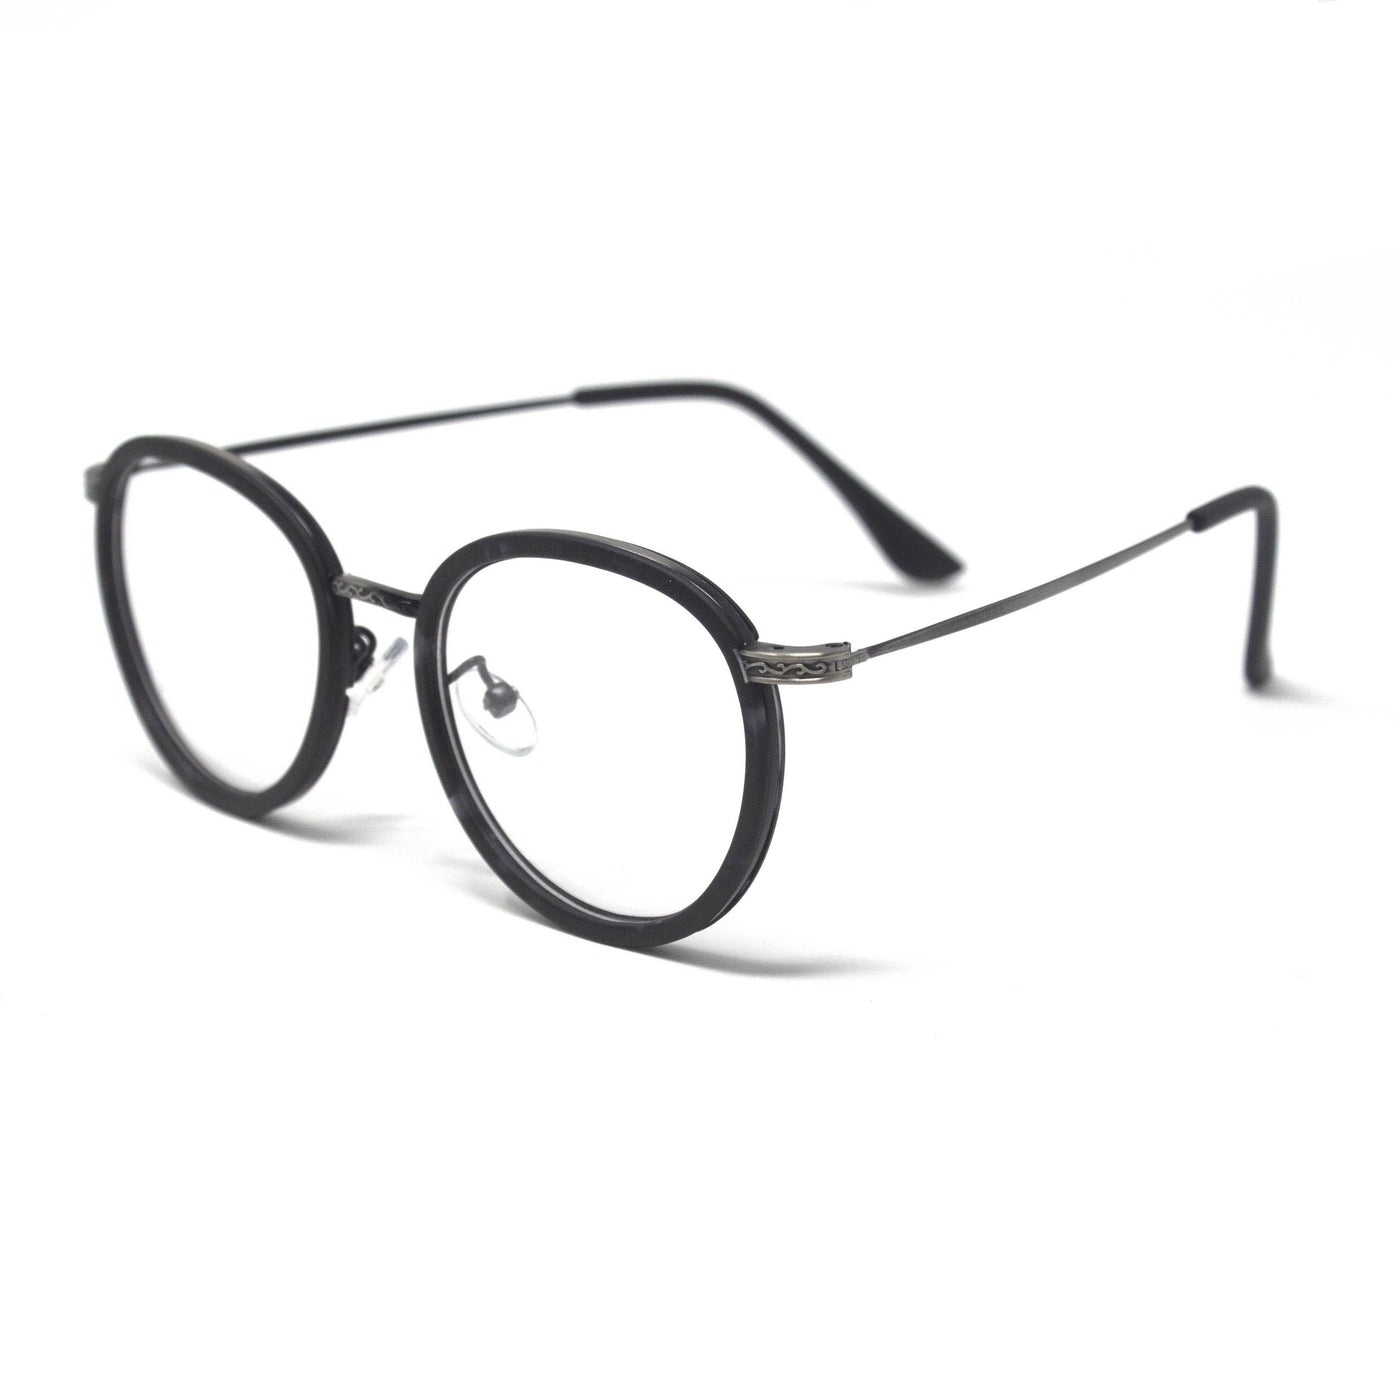 Stylish Optical Black Round Frame Eyewear